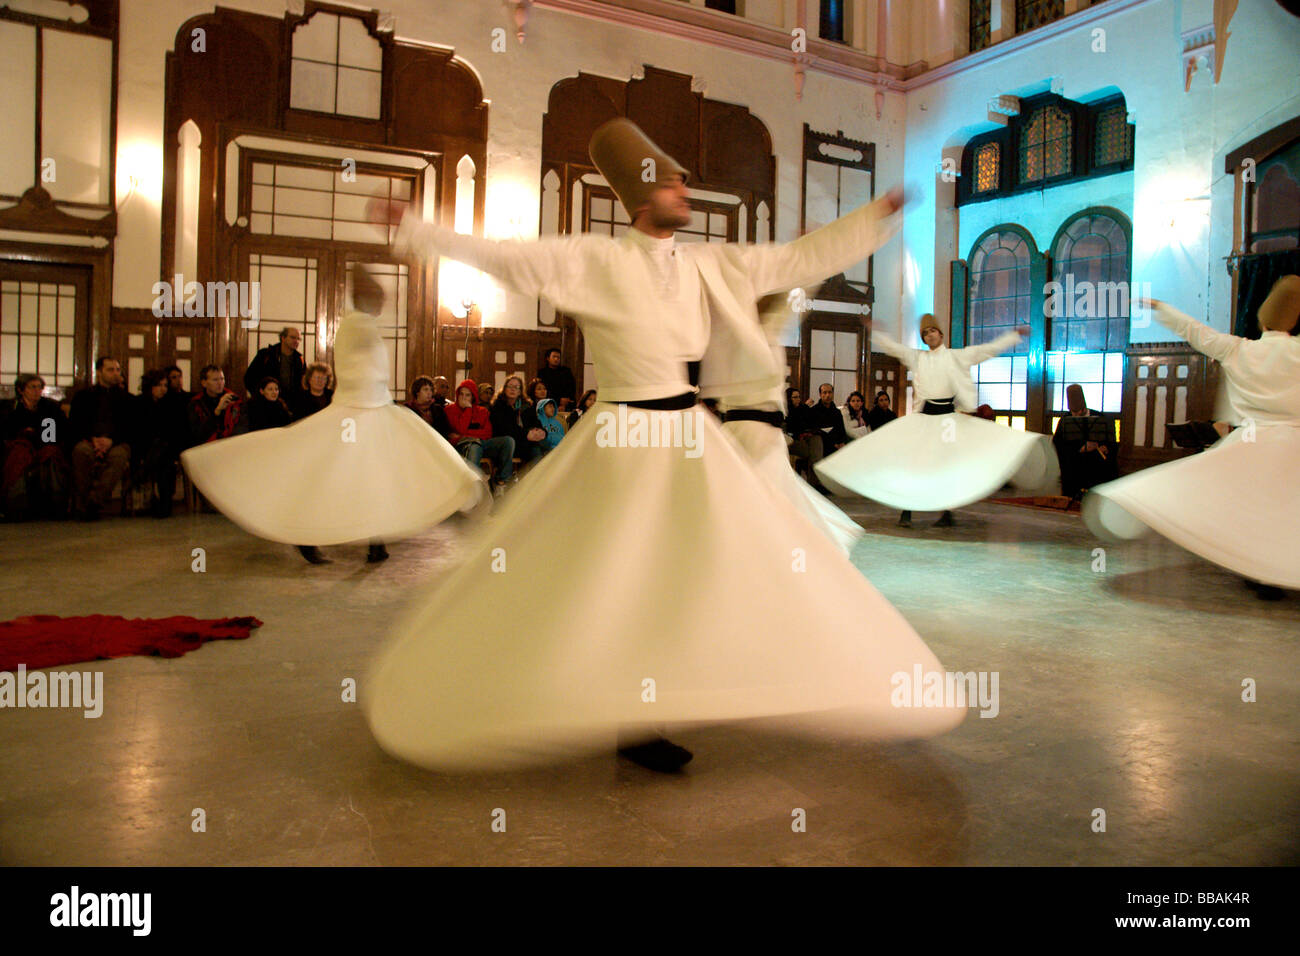 Leistung von tanzenden Derwische von Galata Mevlevi Lodge Sultanahmet Istanbul Türkei (c) Marc Jackson Fotografie Stockfoto